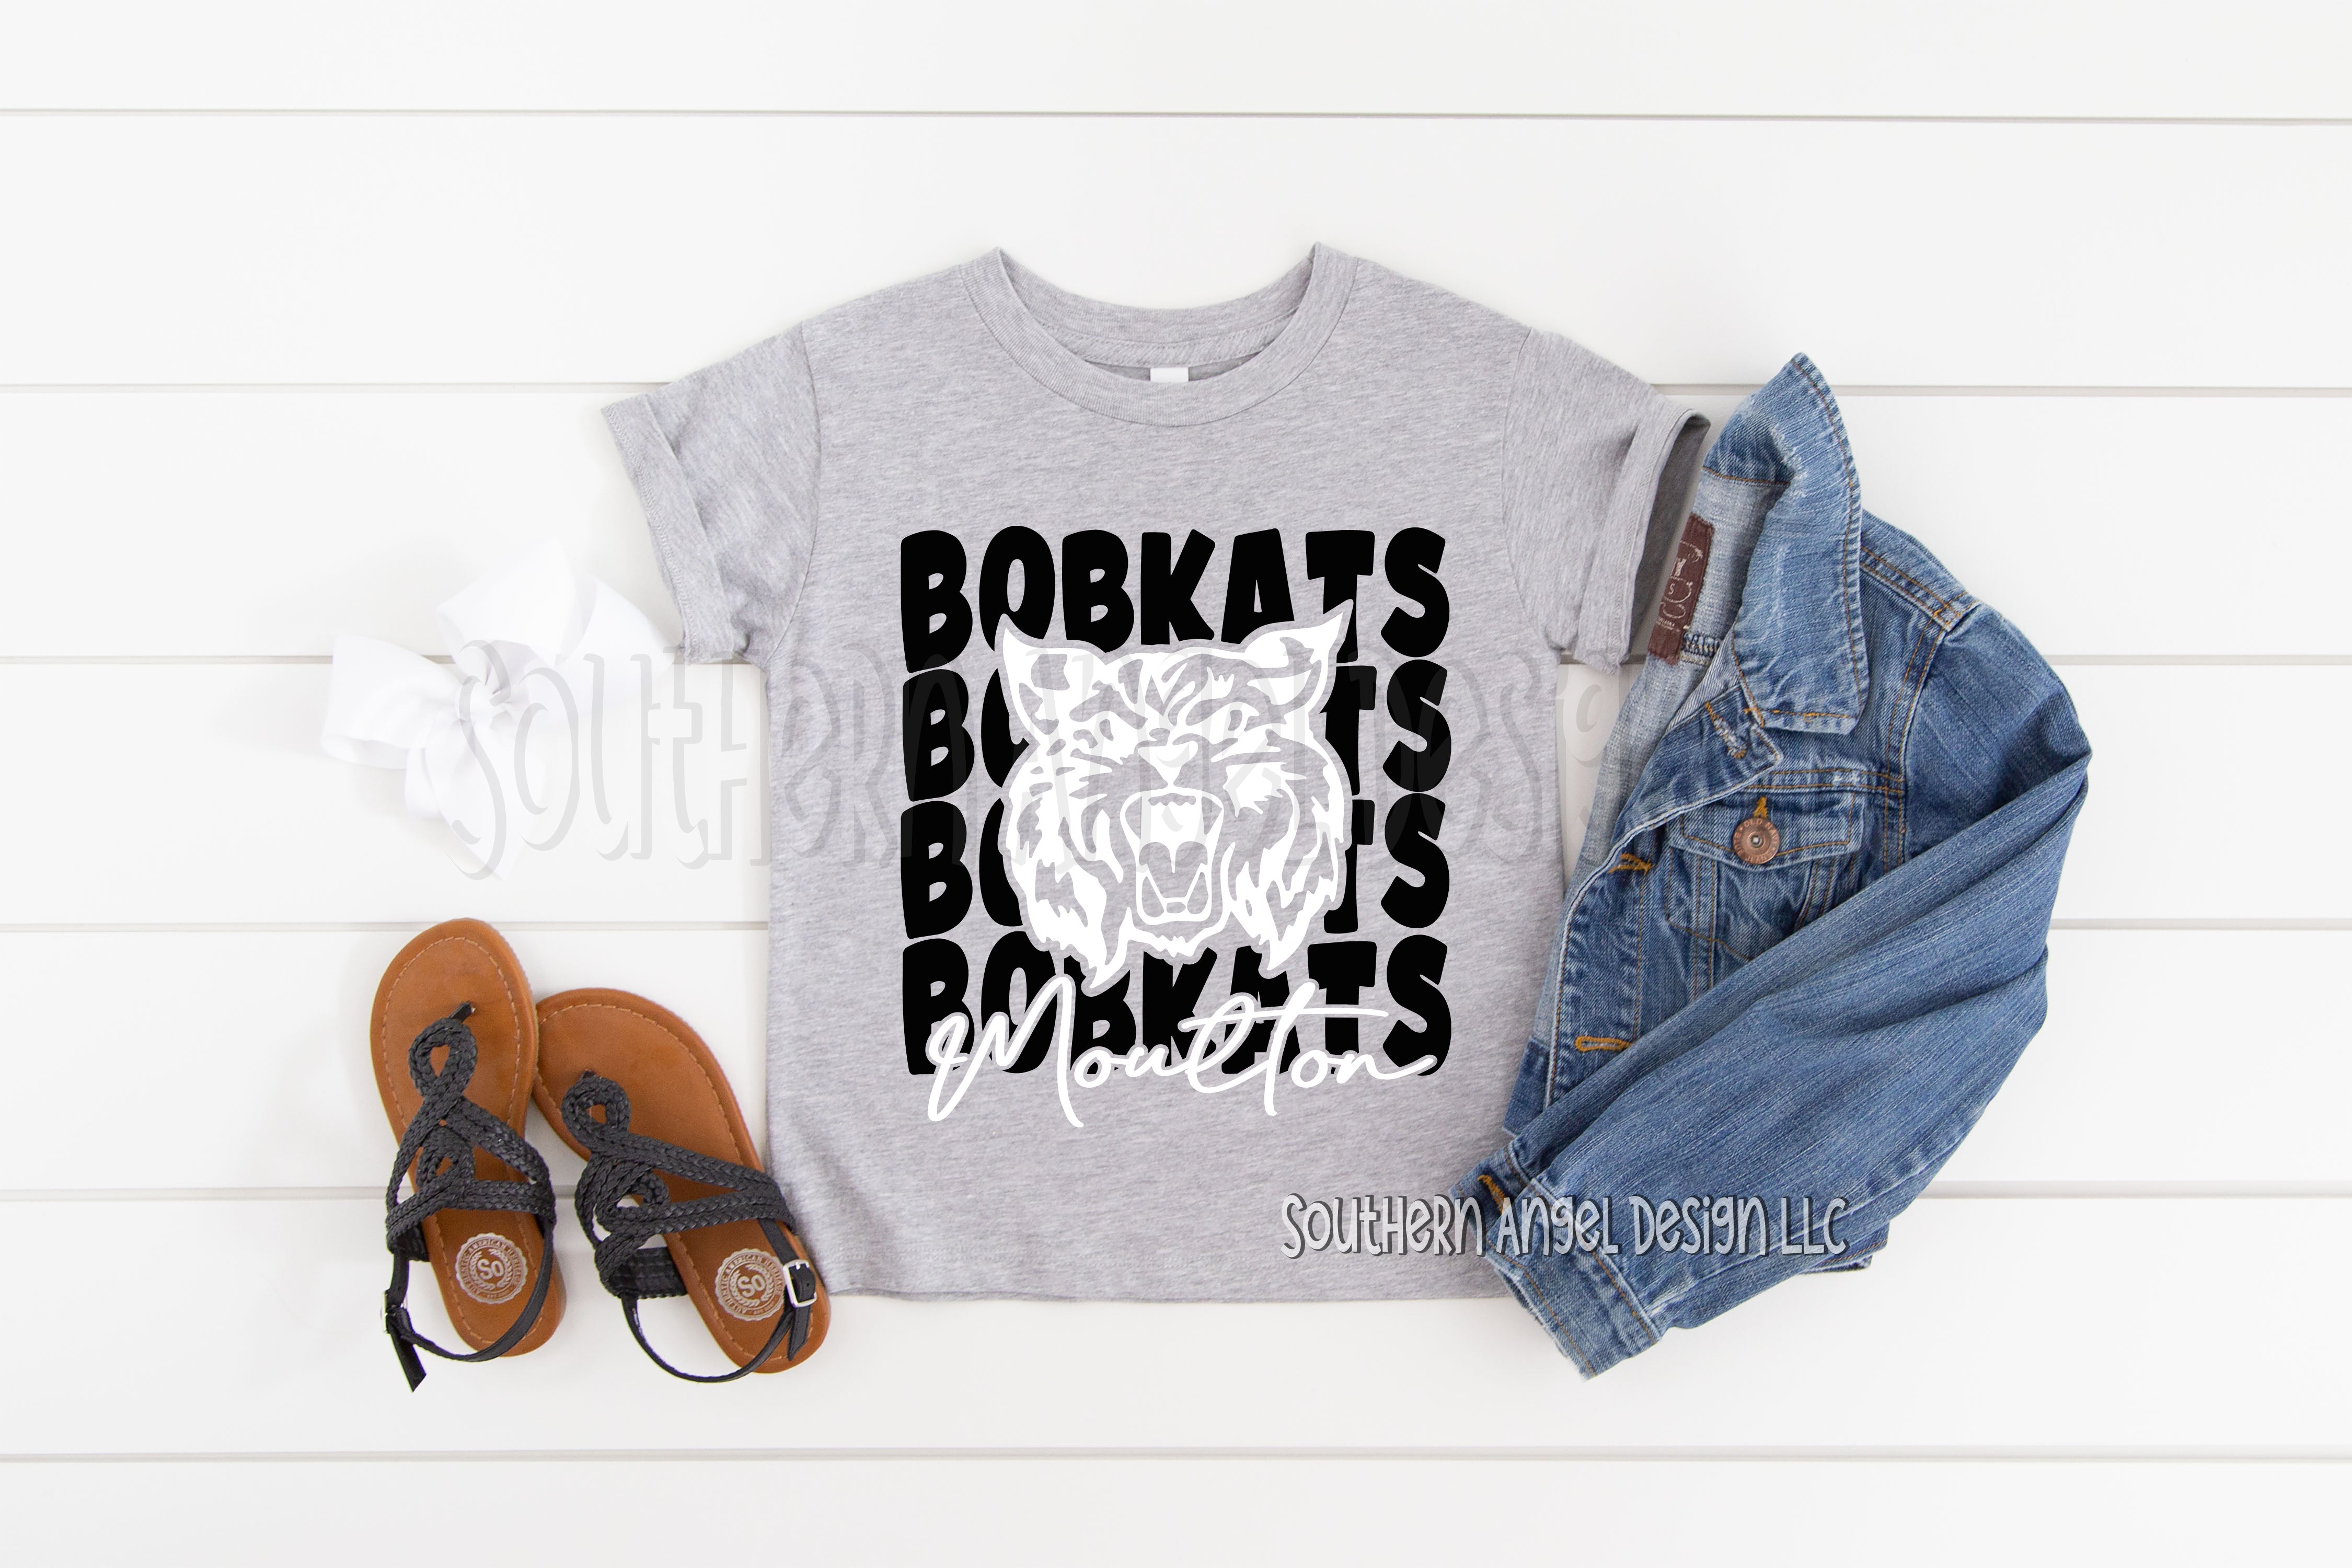 Lavender Moulton Bobkats shirt FB0411C1-60E3-41FF-B1E6-39C76851F316.jpg moulton-bobkats-shirt School